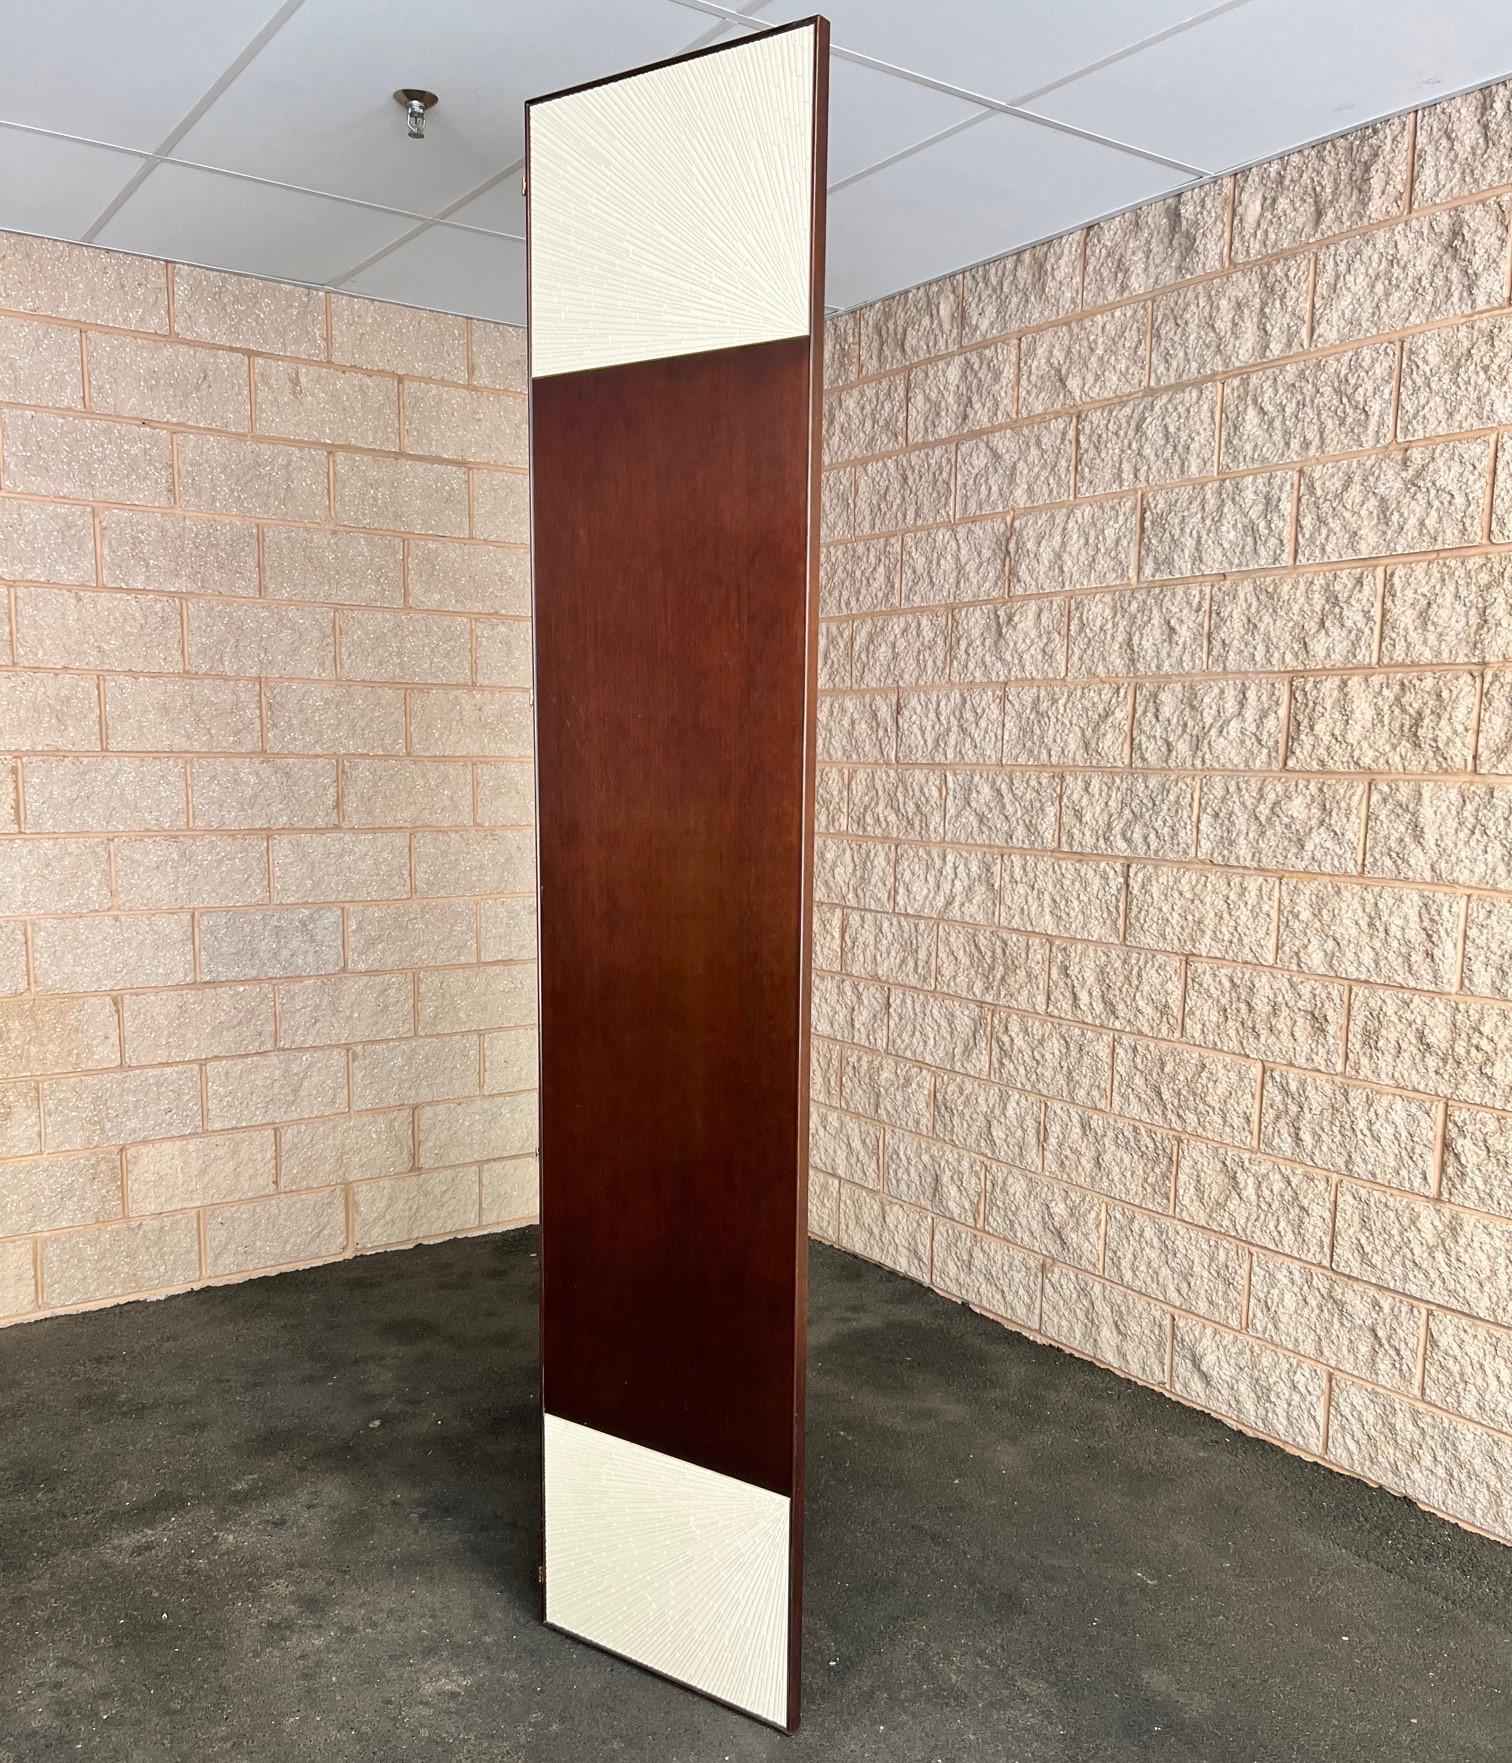 21. C. Thomas Pheasant für Baker Furniture, der Radiant Screen in limitierter Auflage, ein moderner Paravent mit hoher Berührungsempfindlichkeit, dessen obere und untere Bänder ein kompliziertes strahlendes Reliefmuster aufweisen. Diese aus Gießharz